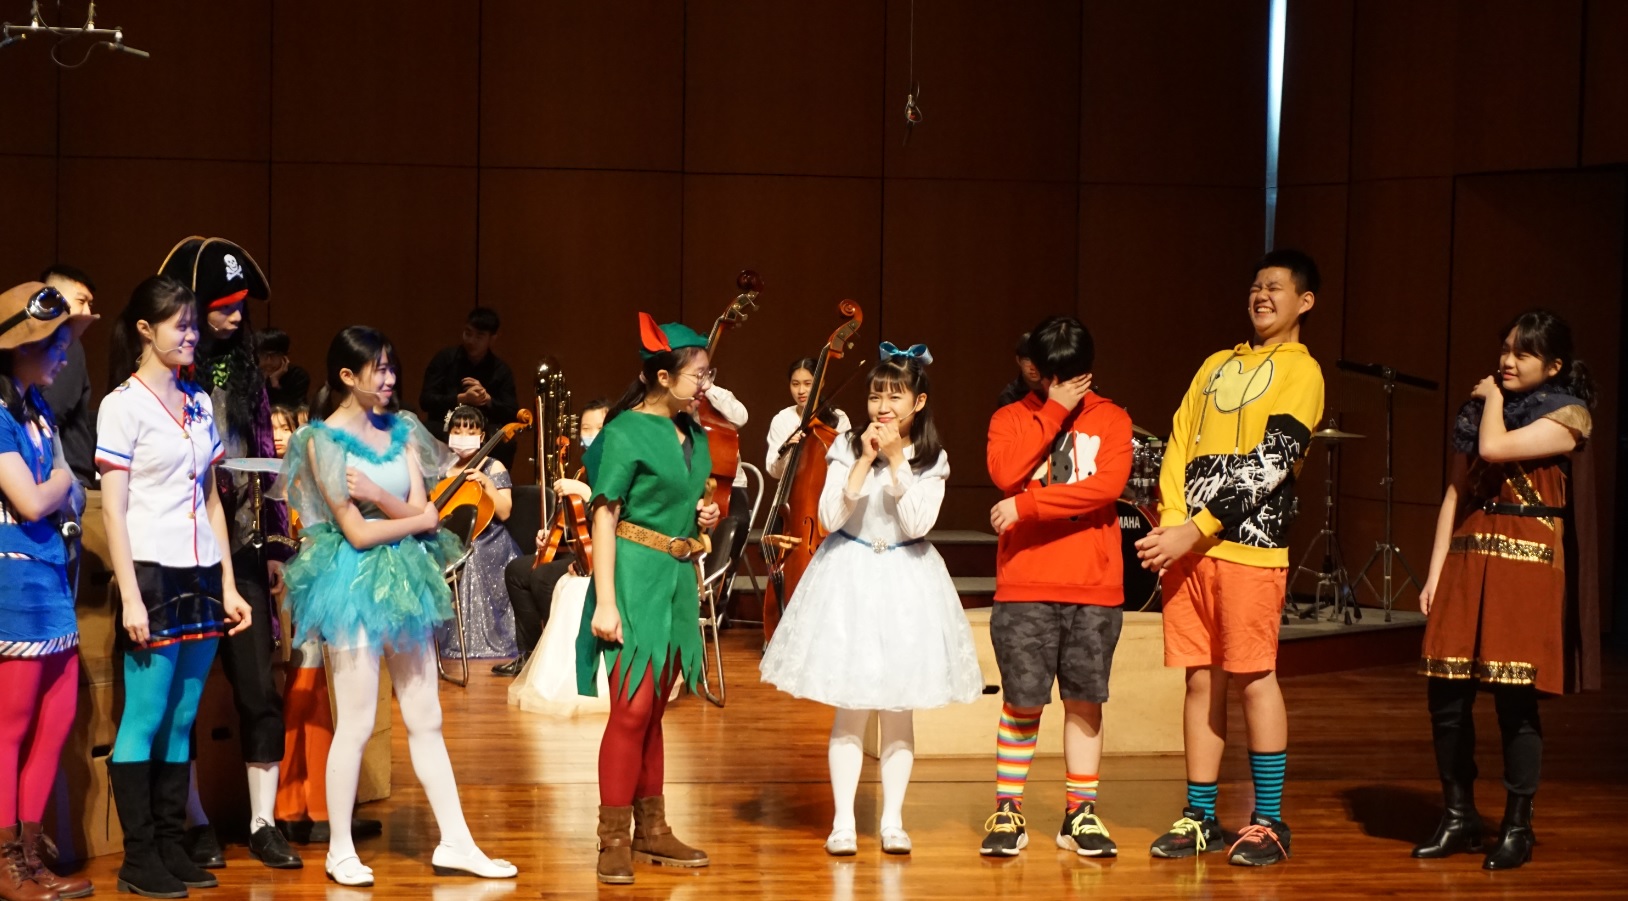 臺中市立雙十國民中學音樂班第47屆畢業音樂會暨成果發表會、共1張圖片